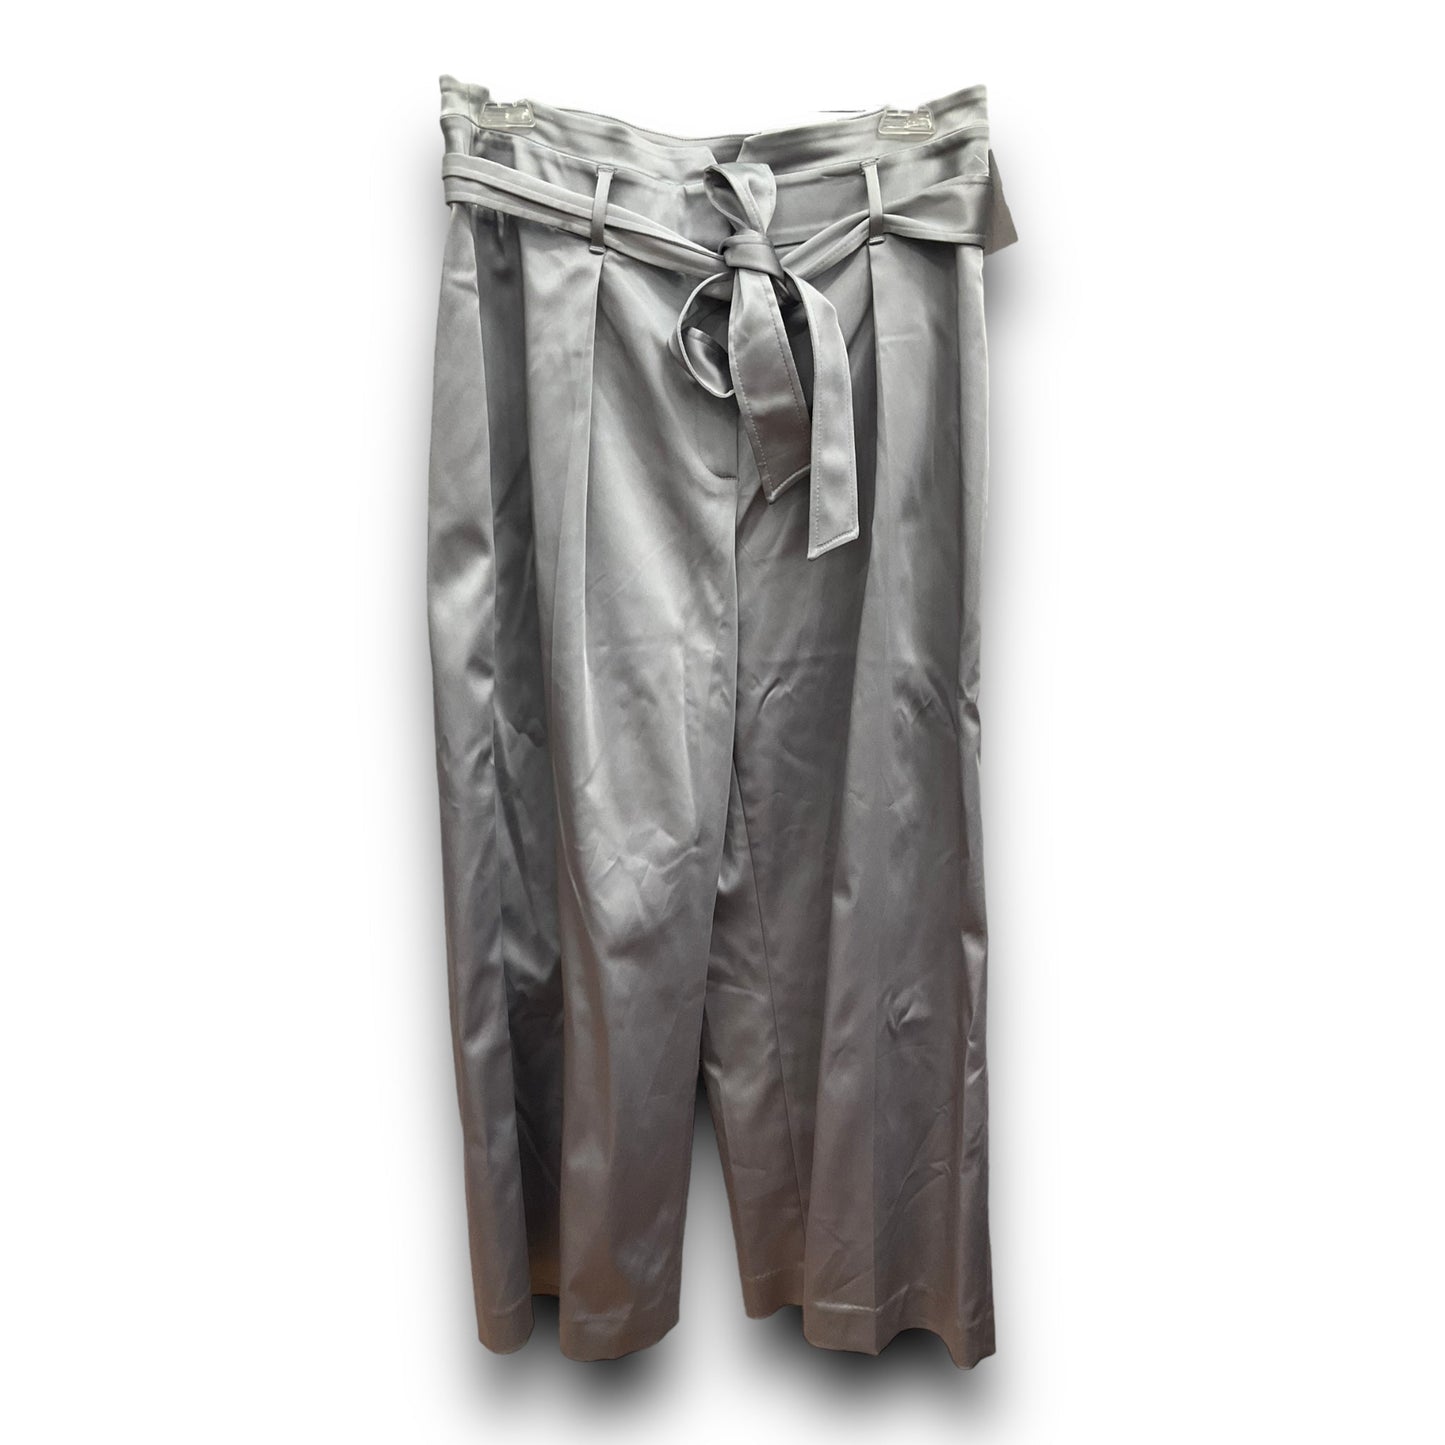 Silver Pants Wide Leg White House Black Market, Size 10